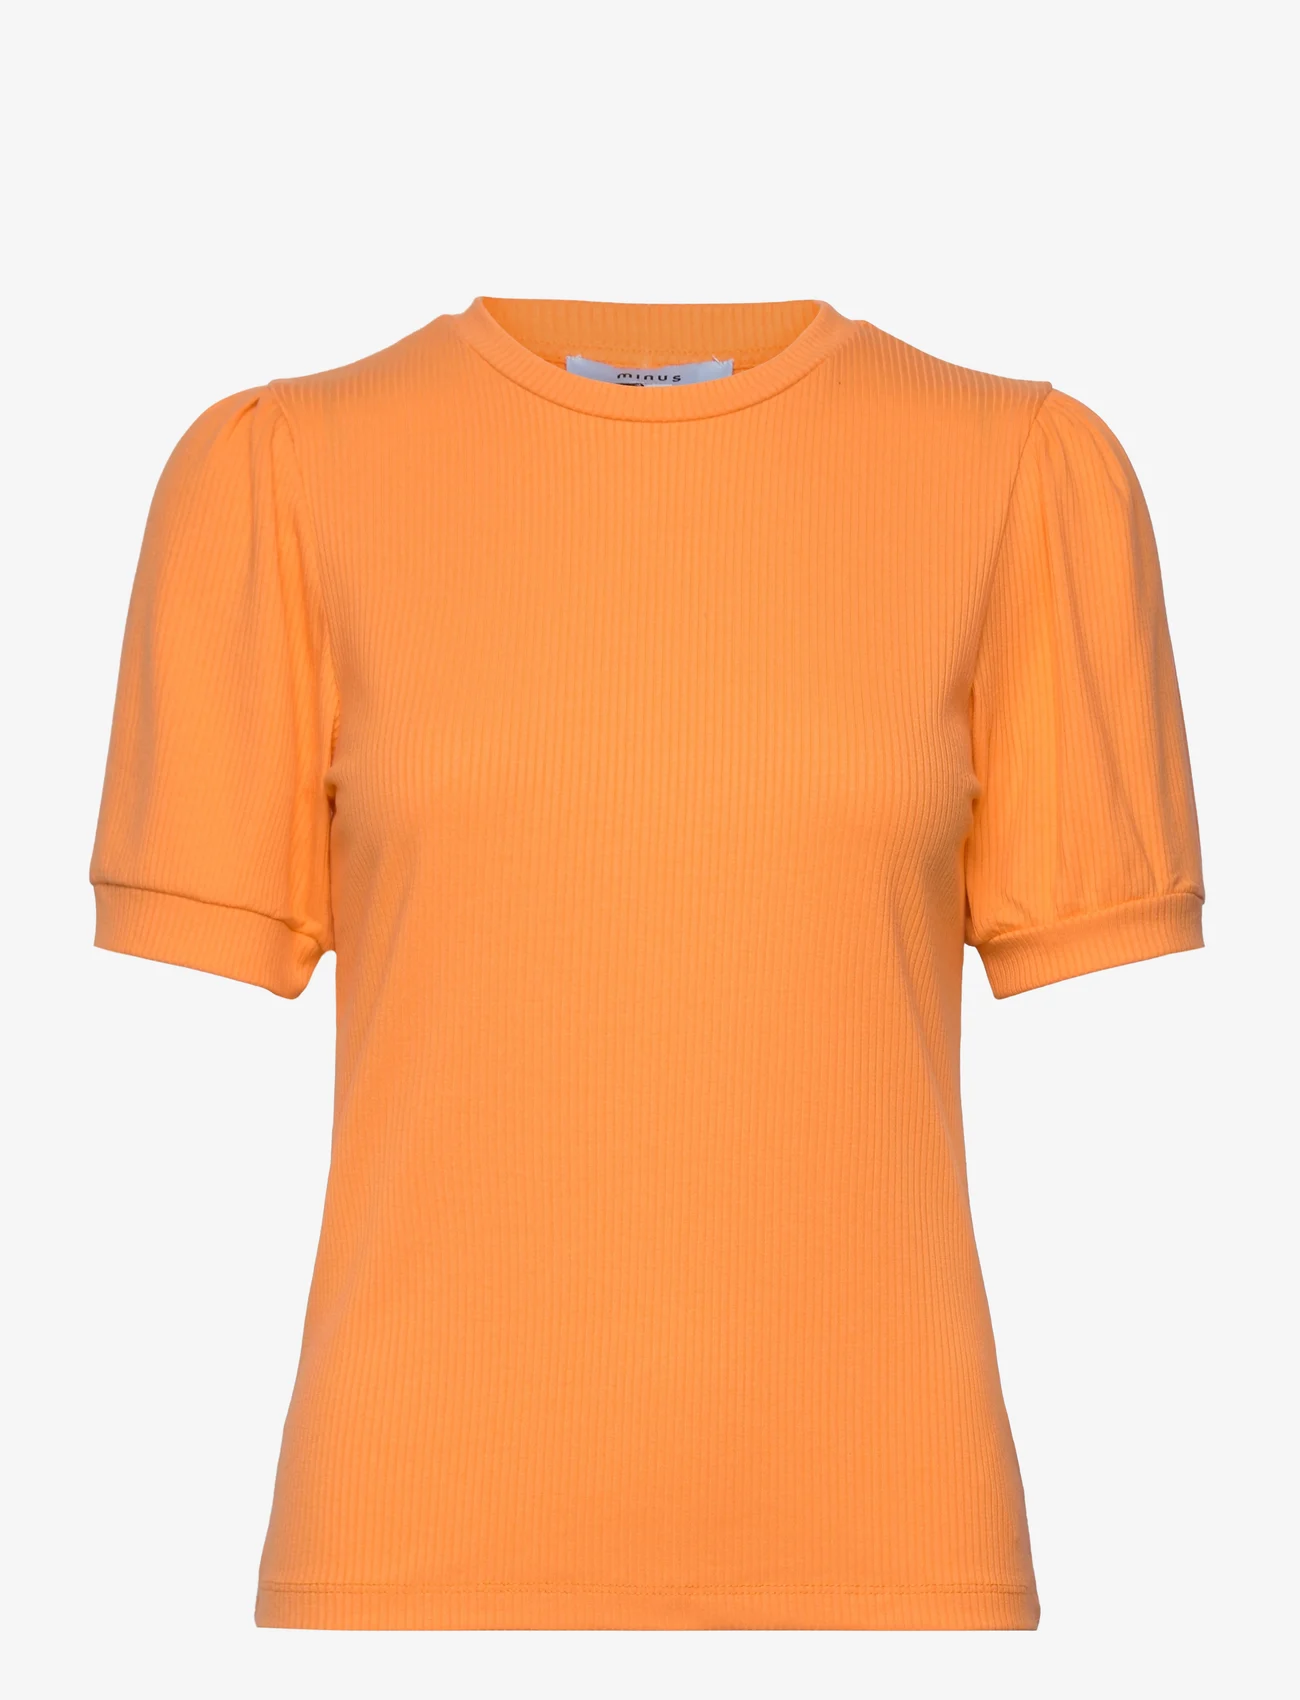 Minus - Johanna T-shirt - laveste priser - orange peel - 0